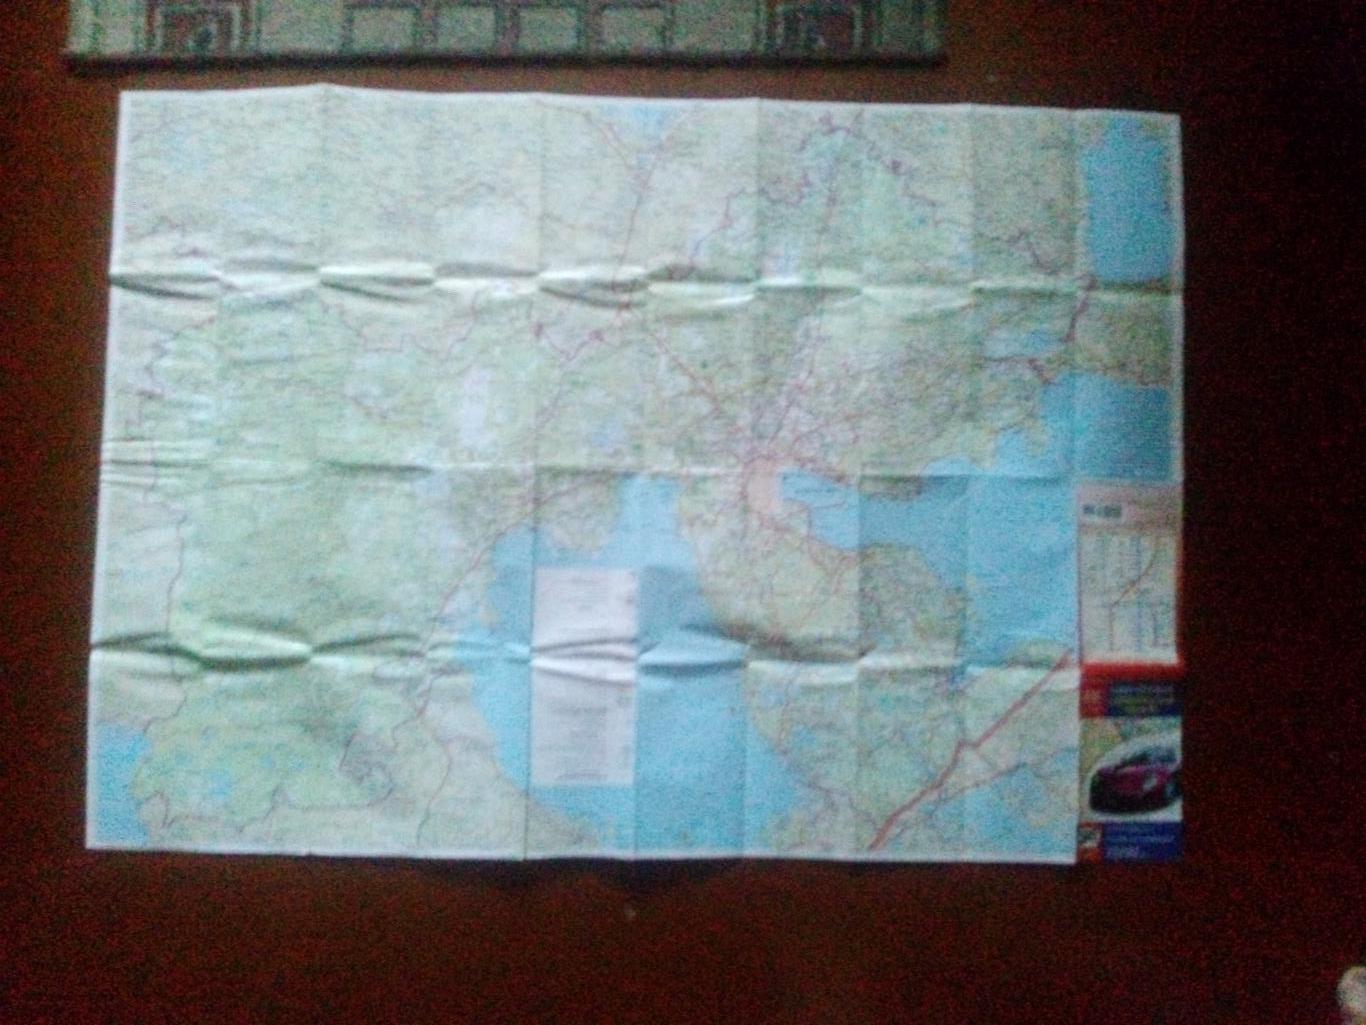 Карта (туристская схема) : Санкт-Петербург и Ленинградская область 2010 г. 7